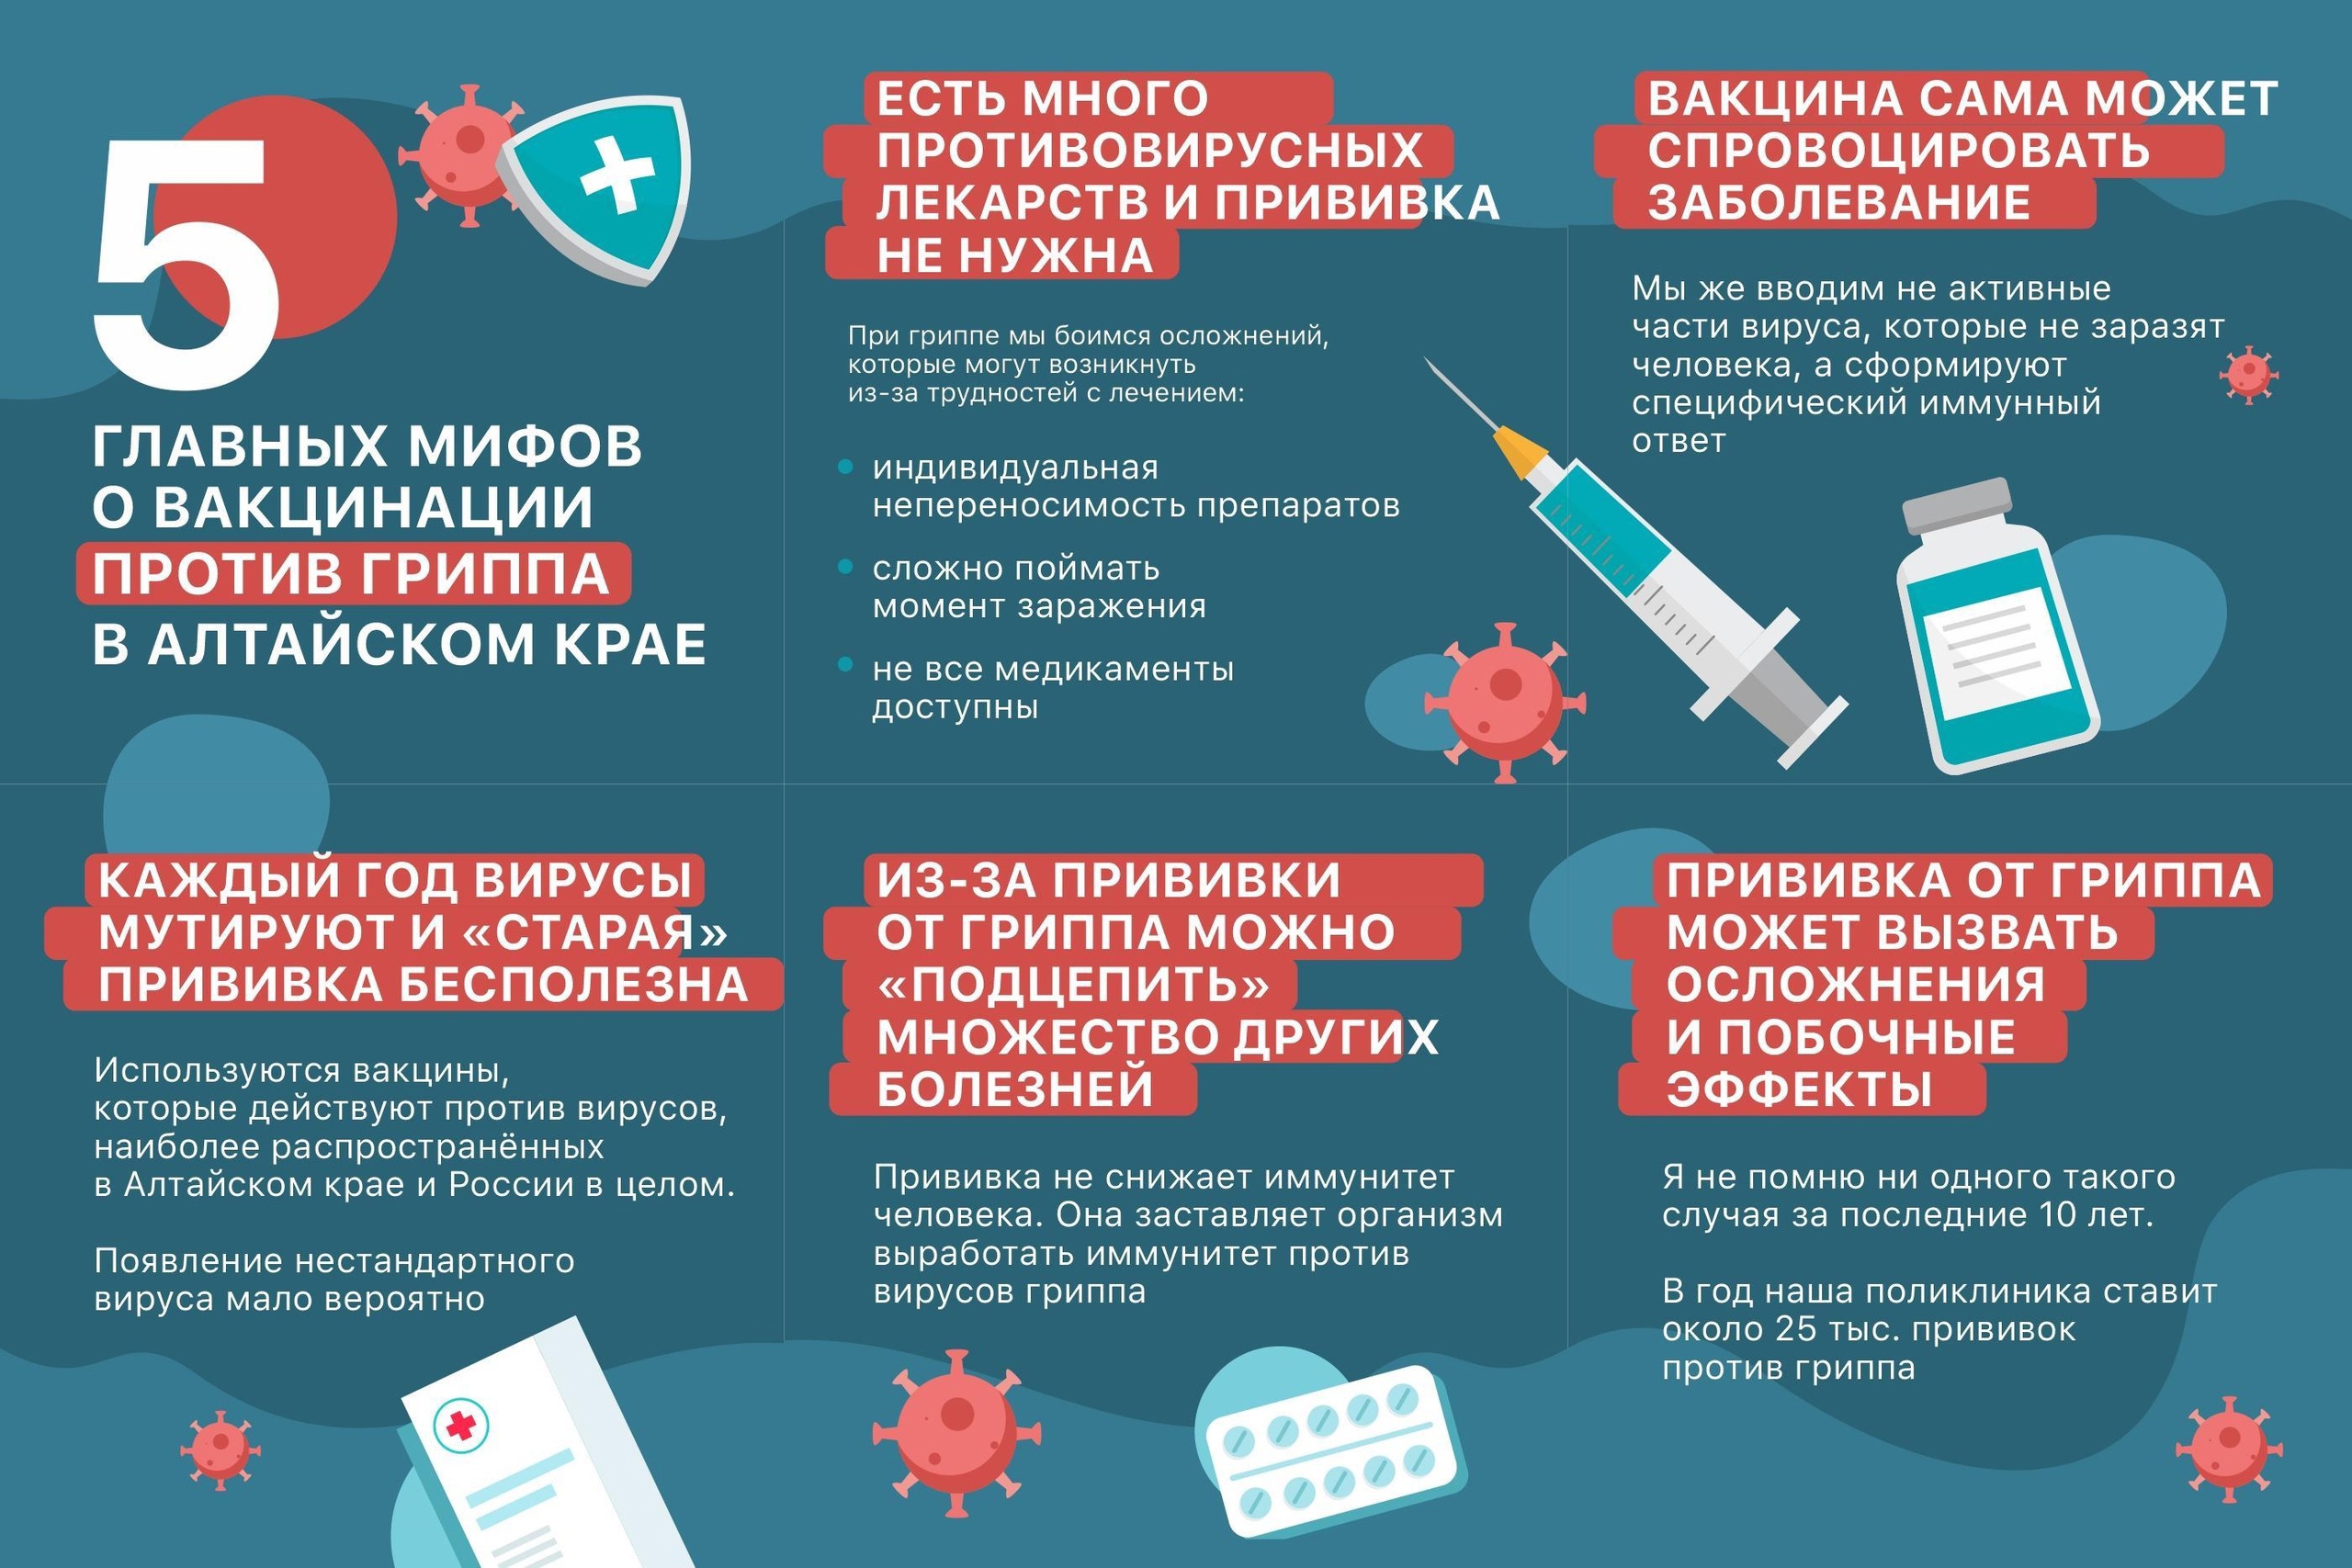 Прививочная кампания против гриппа в Алтайском крае 